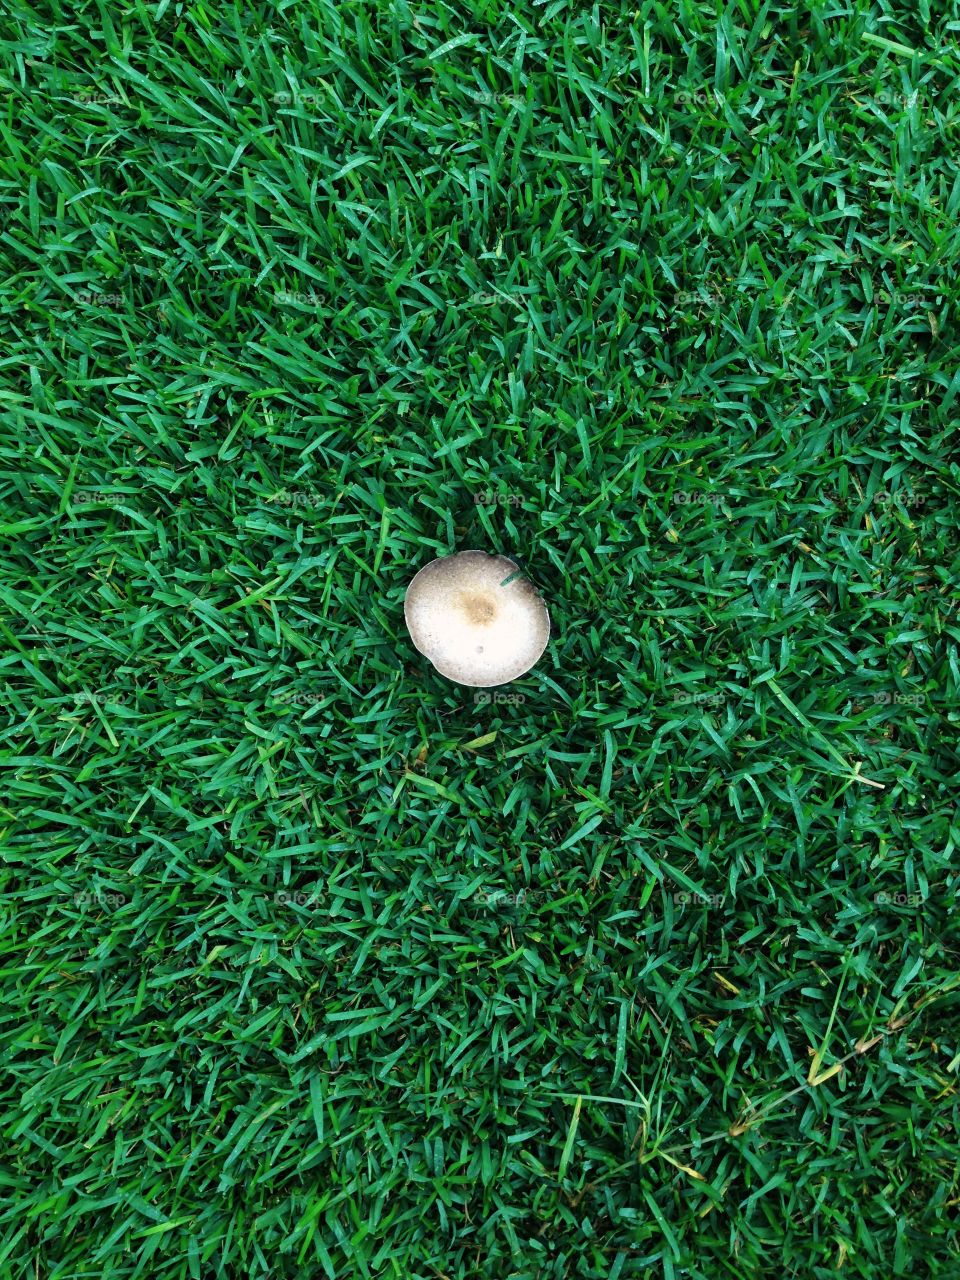 Mushroom on lawn